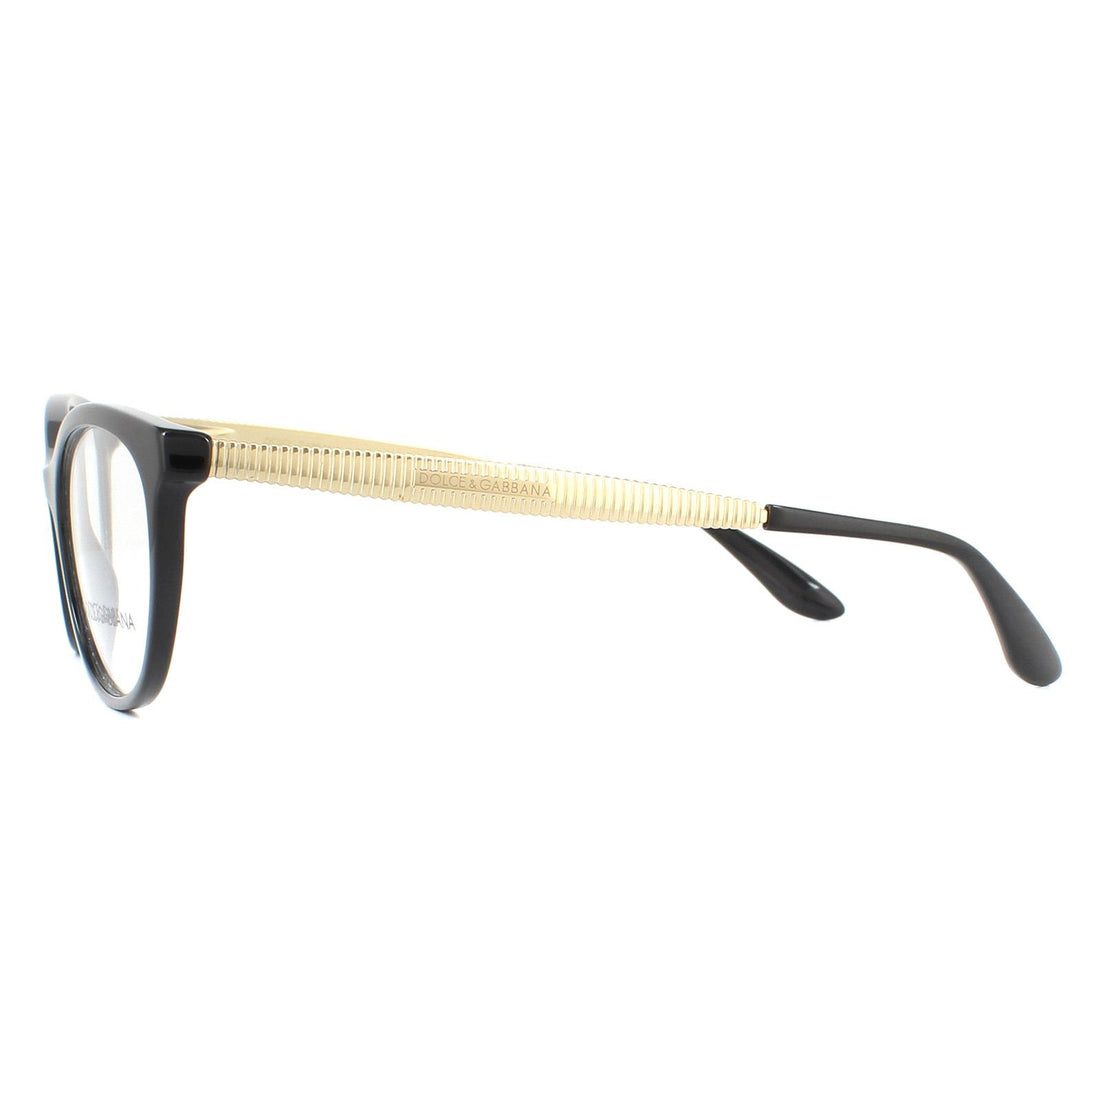 Dolce & Gabbana DG3310 Glasses Frames